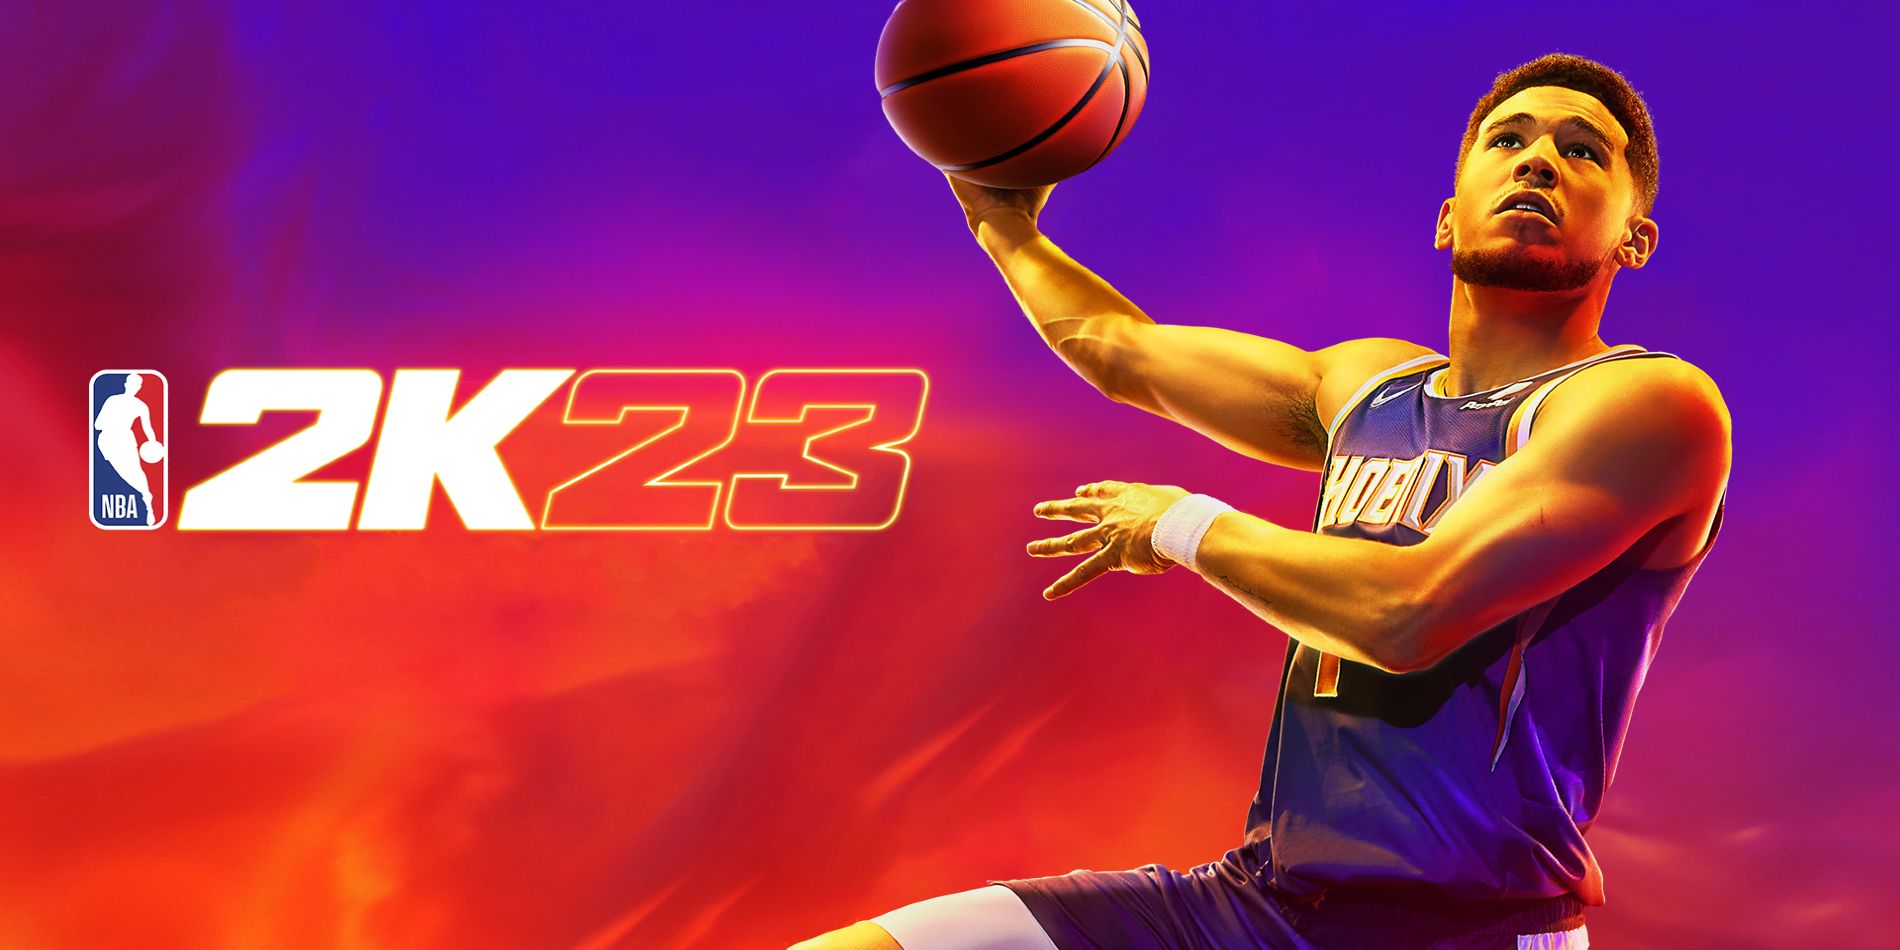 NBA 2K23 Official Key Art Featuring Devin Booker